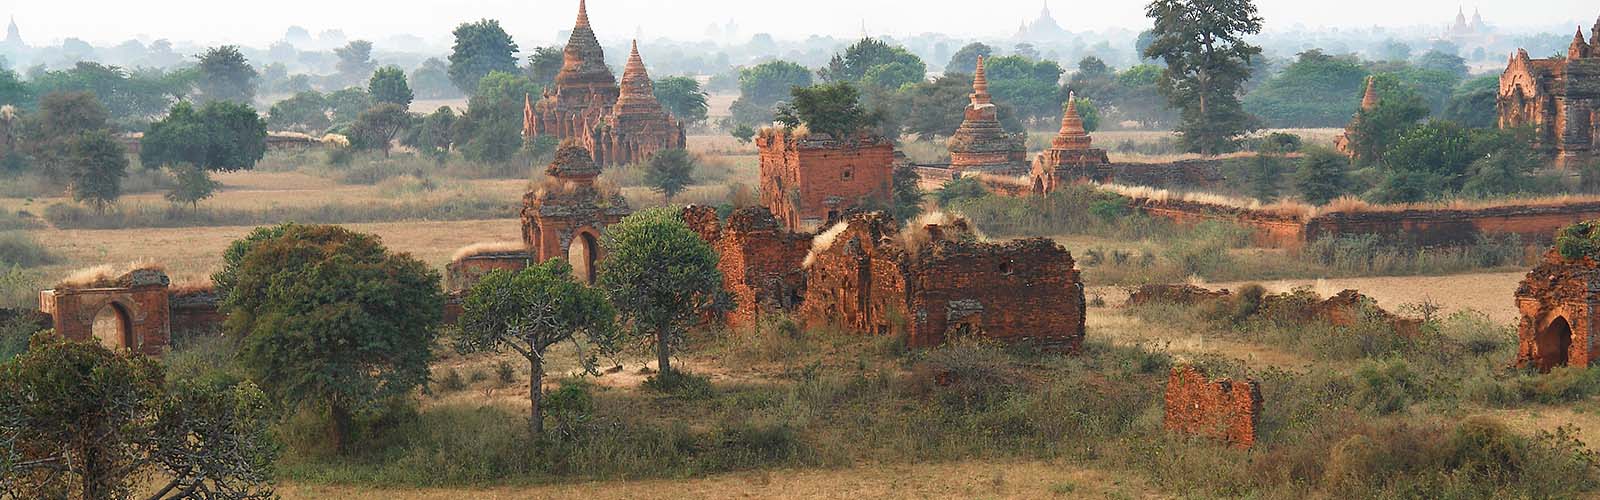 Viaggio Birmania | Viaggio personalizzato in Birmania | ilotustours.com